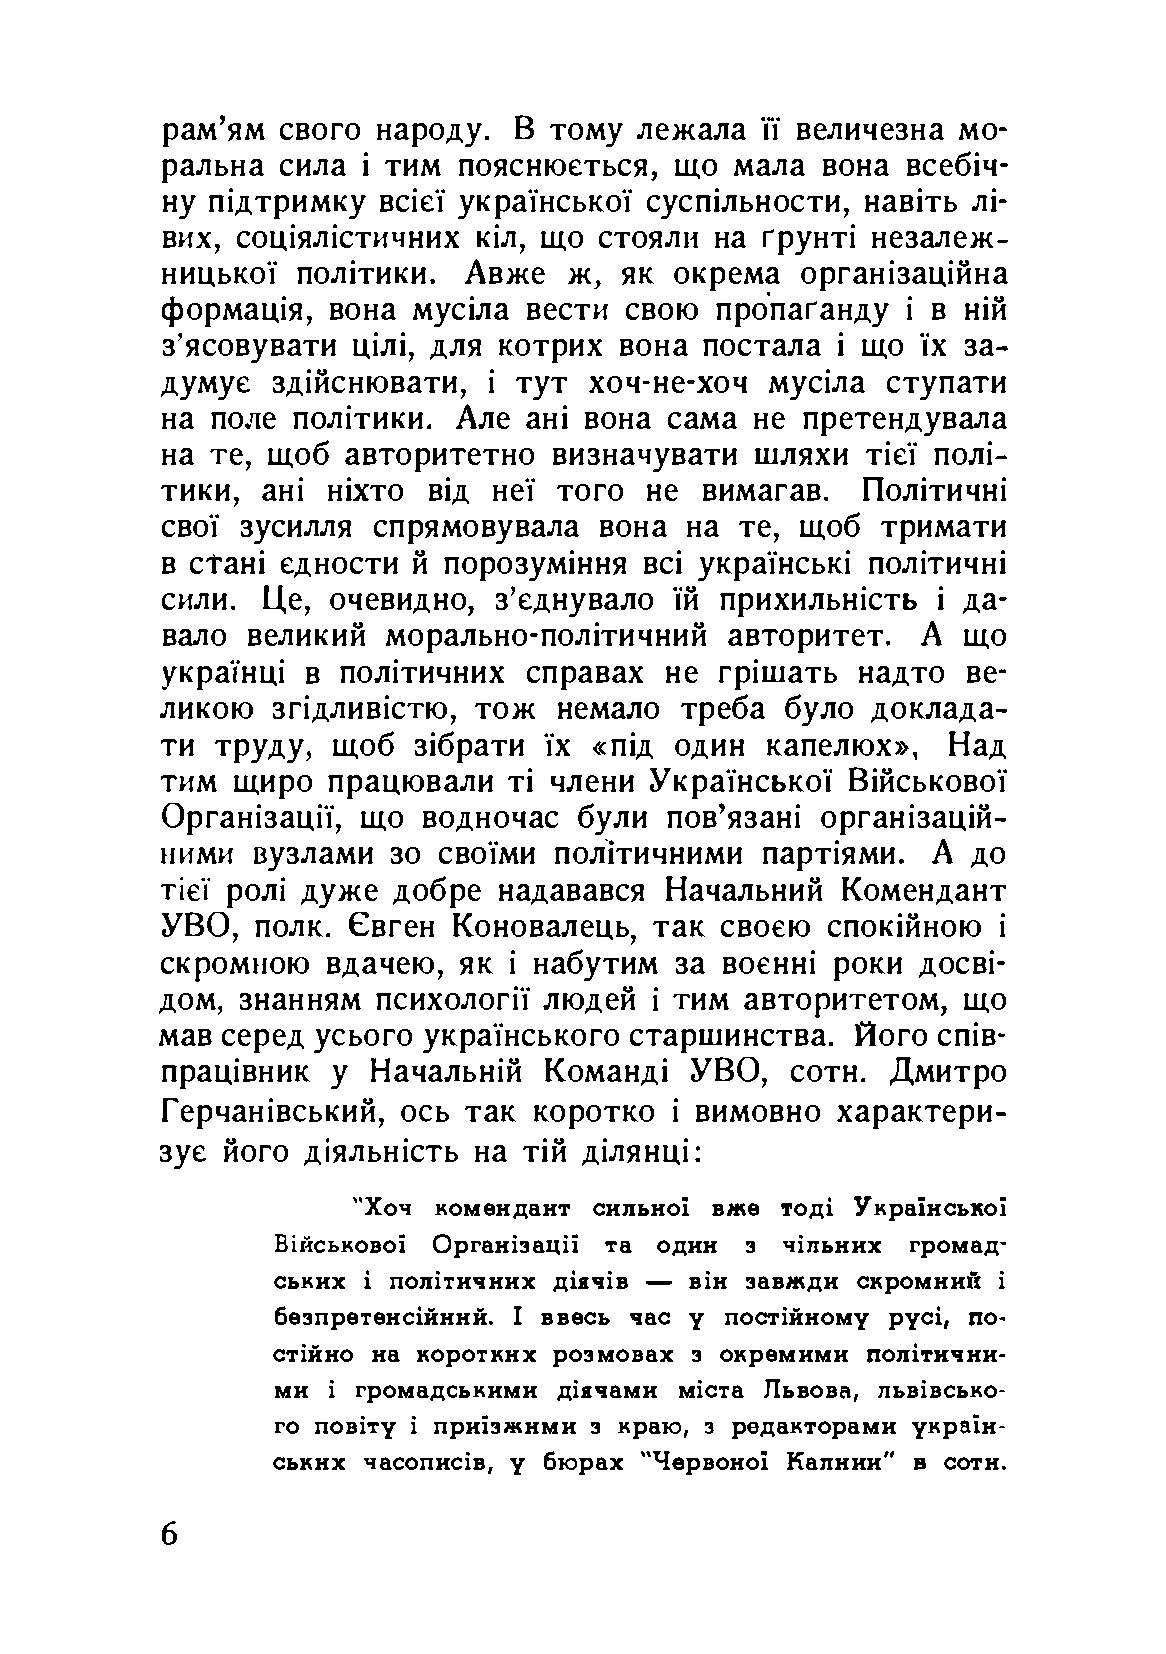 Власним руслом. Українська військова організація від осені 1922 до літа 1924 року. Автор — Книш Зіновій. 